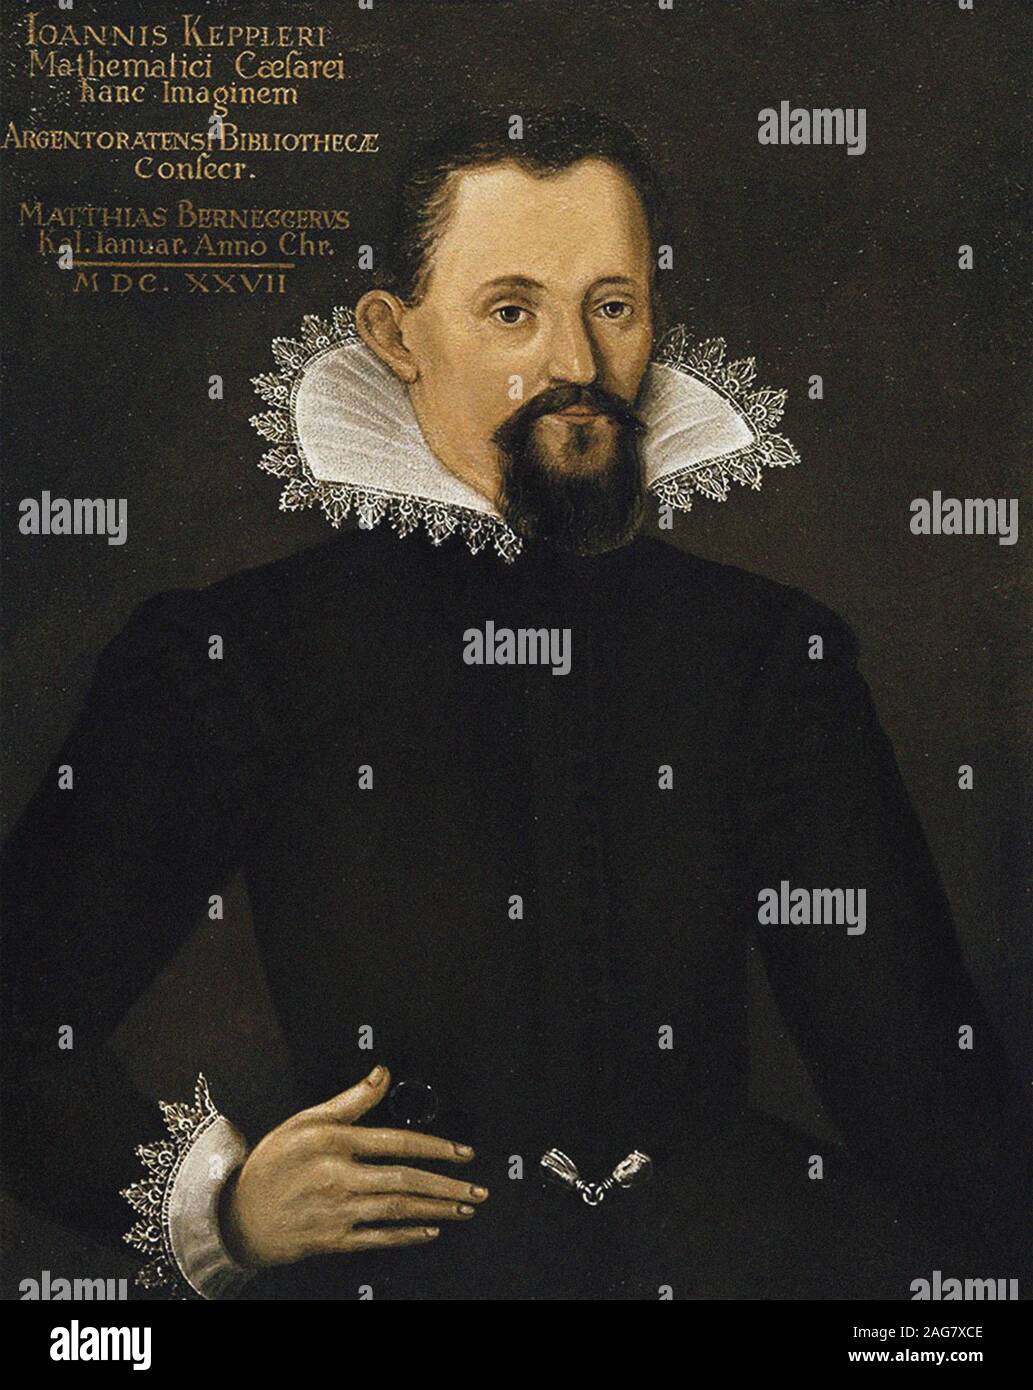 Portrait de Johannes Kepler (1571-1630), ch. 1620. On trouve dans la collection de bibliothèque de l'Académie des Sciences de Russie, Saint-Pétersbourg. Banque D'Images